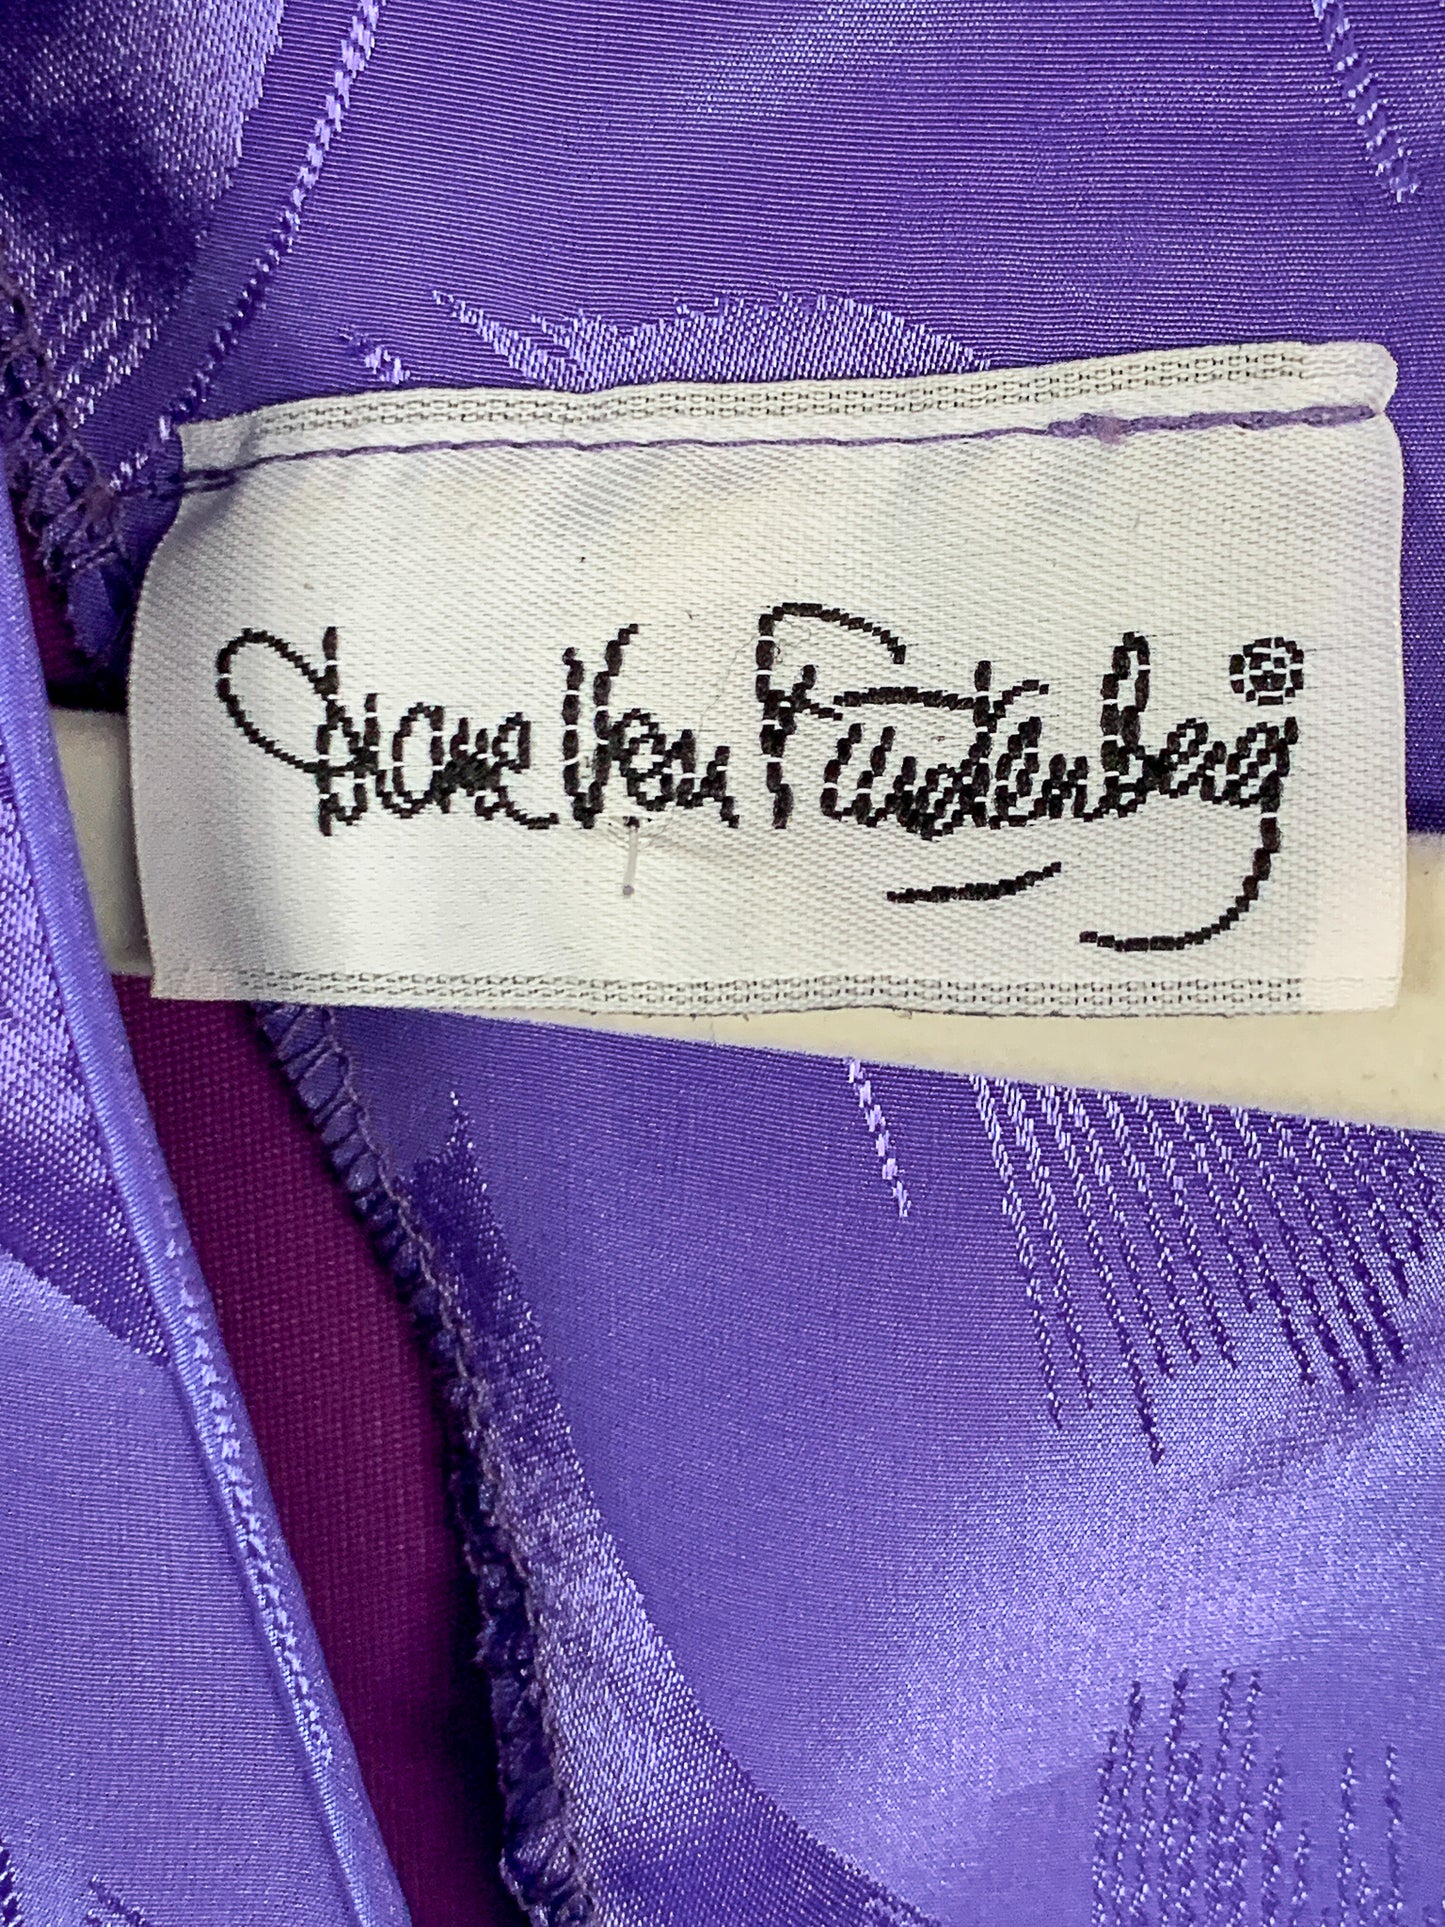 1980s Diane Von Furstenberg Dress